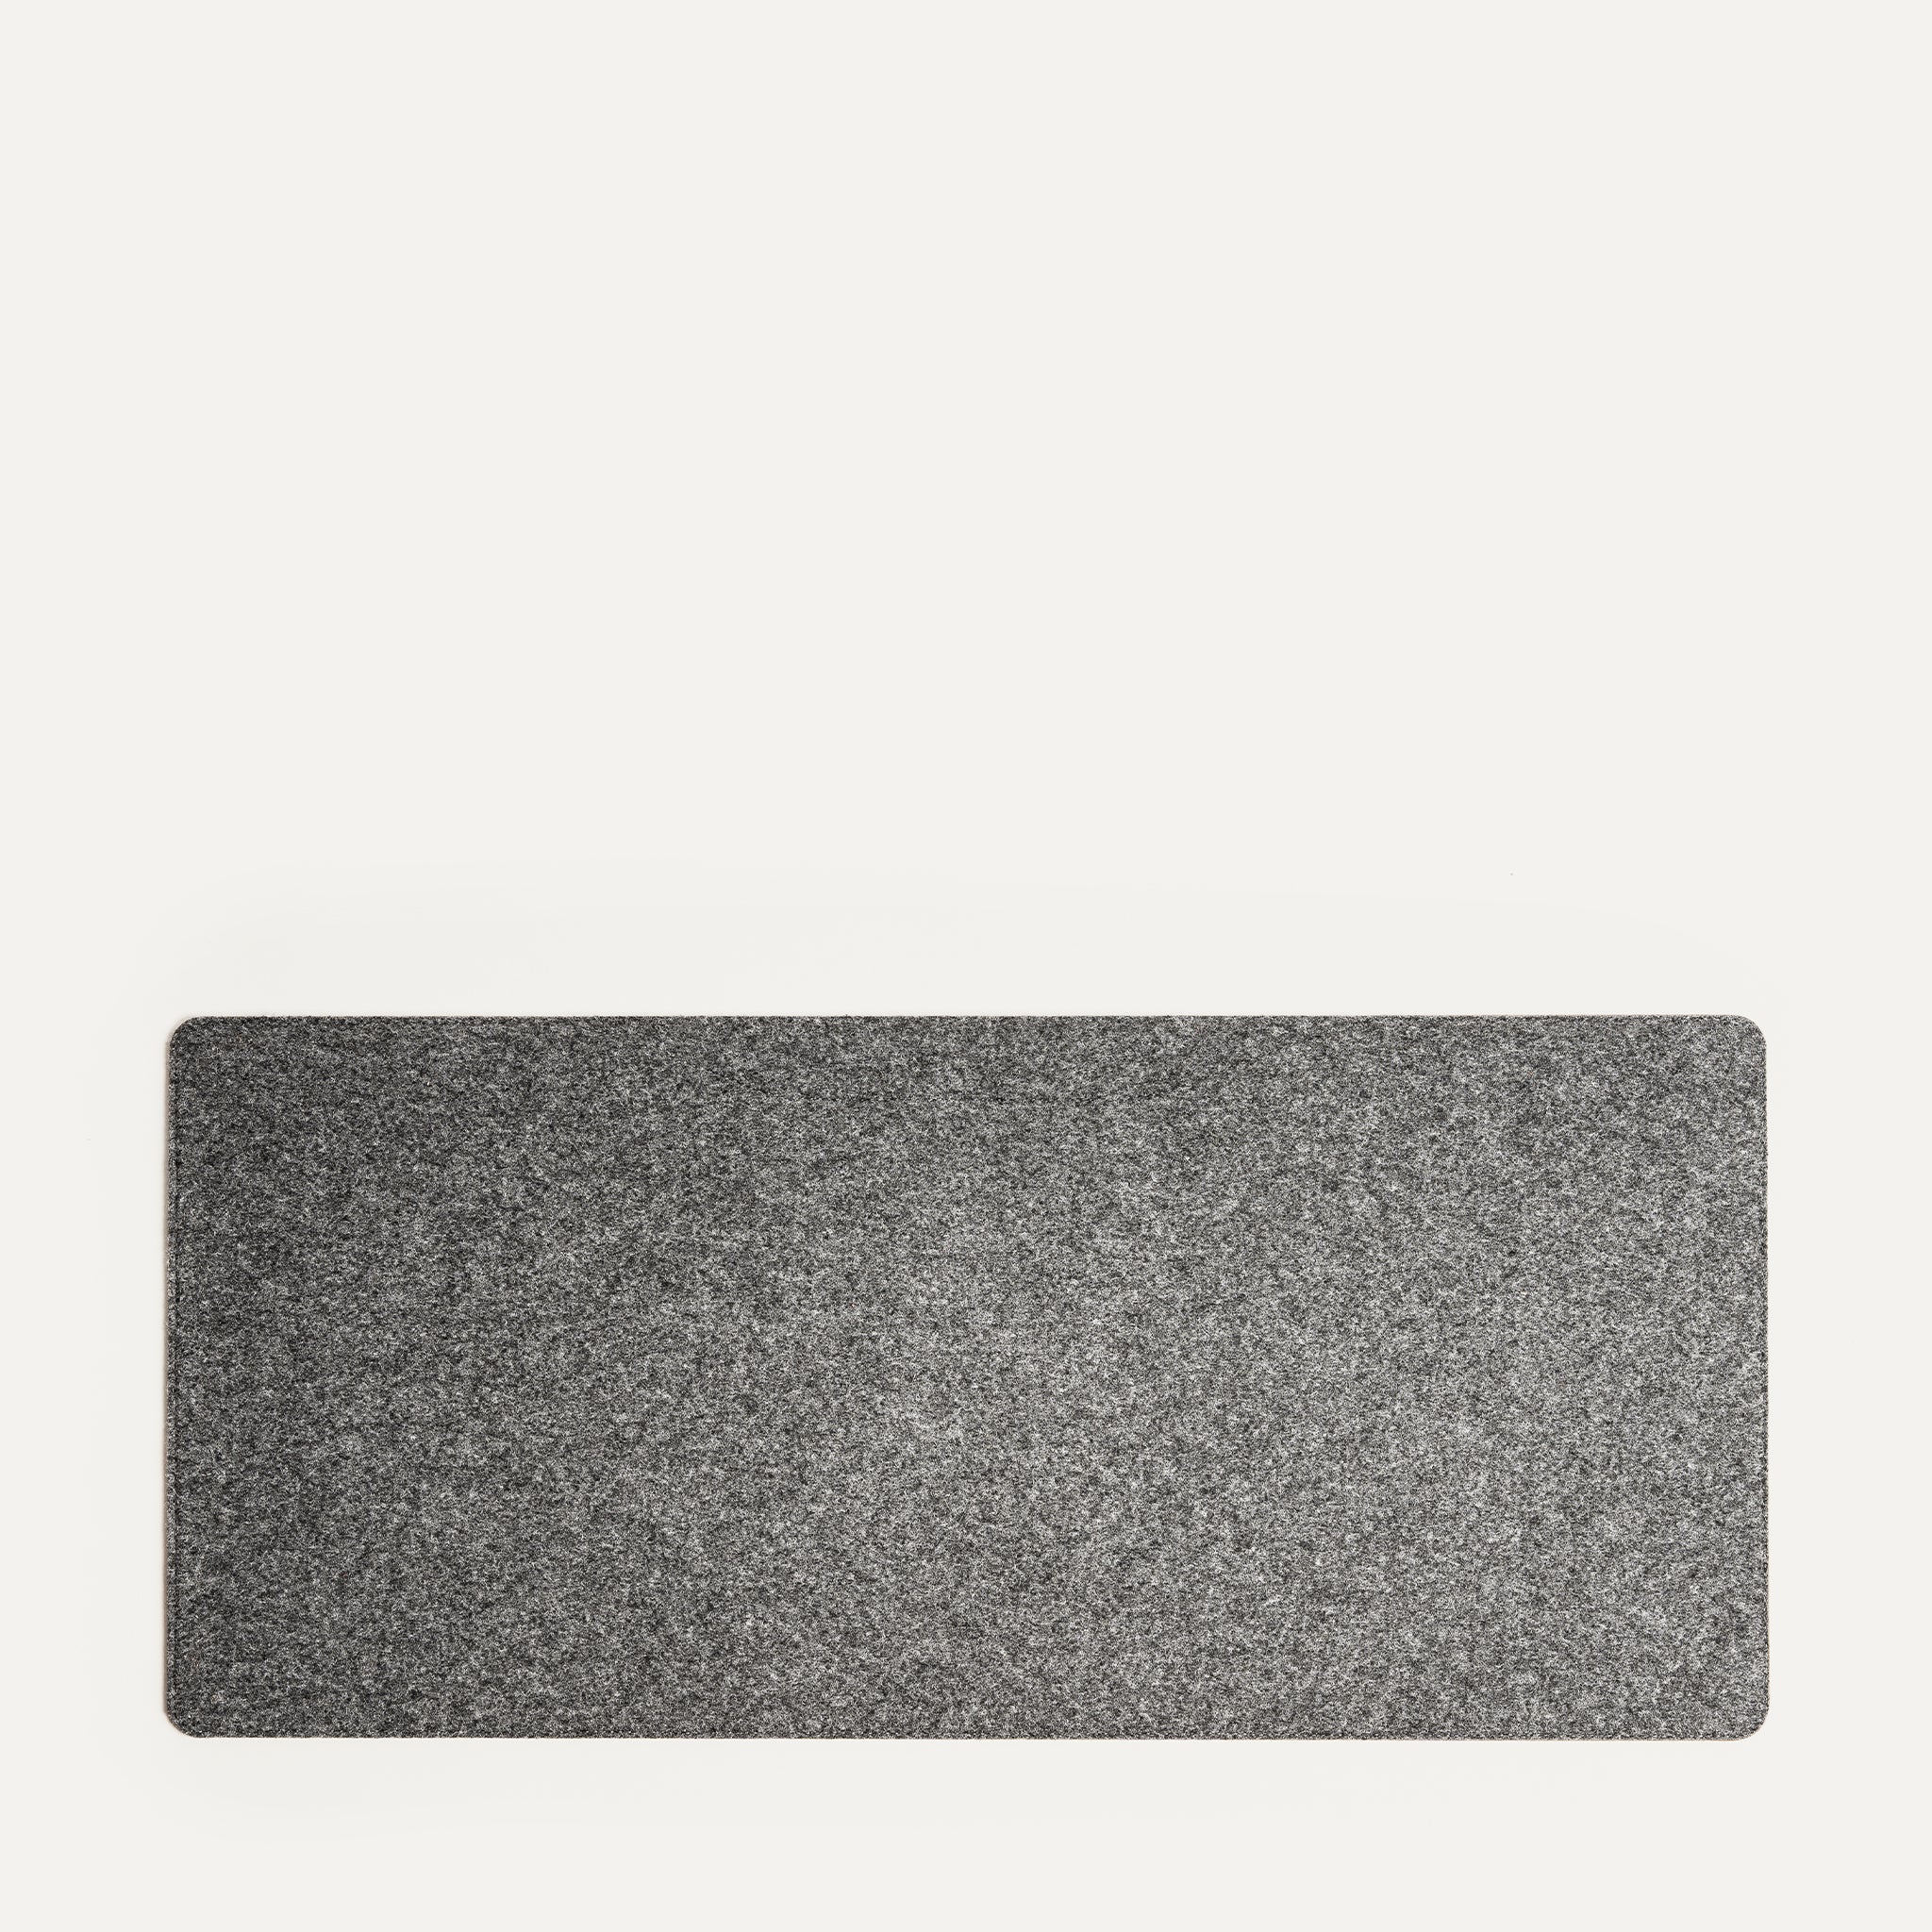 Leather Desk Mat - L Size | LILIO Navy